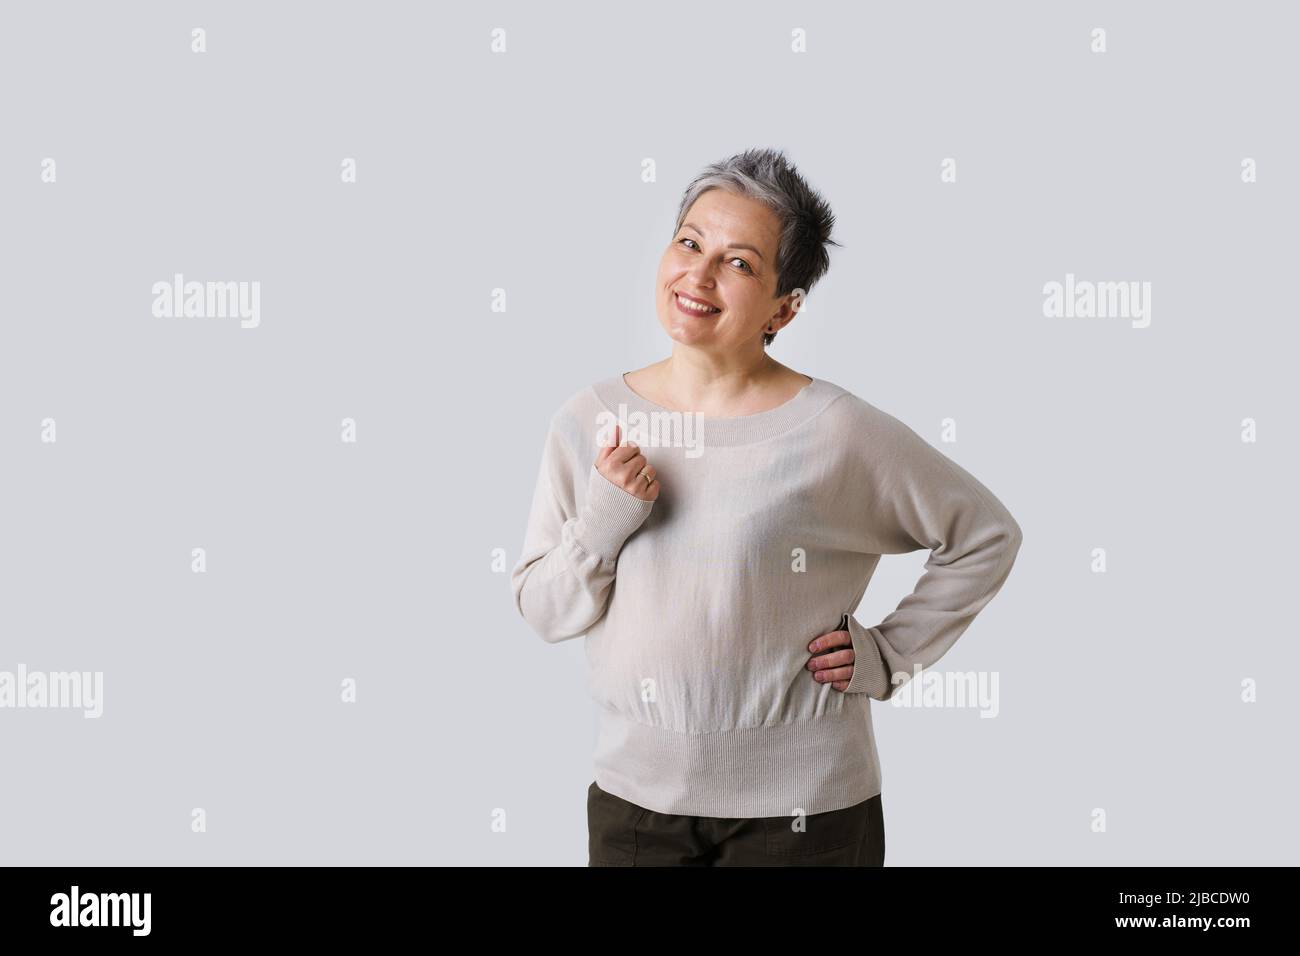 Mère tendre regard de femme mature avec cheveux gris posant avec la main vers le haut isolé sur fond blanc. Copier l'espace et l'emplacement pour le placement du produit. Image en tons. Concept de beauté vieilli. Banque D'Images